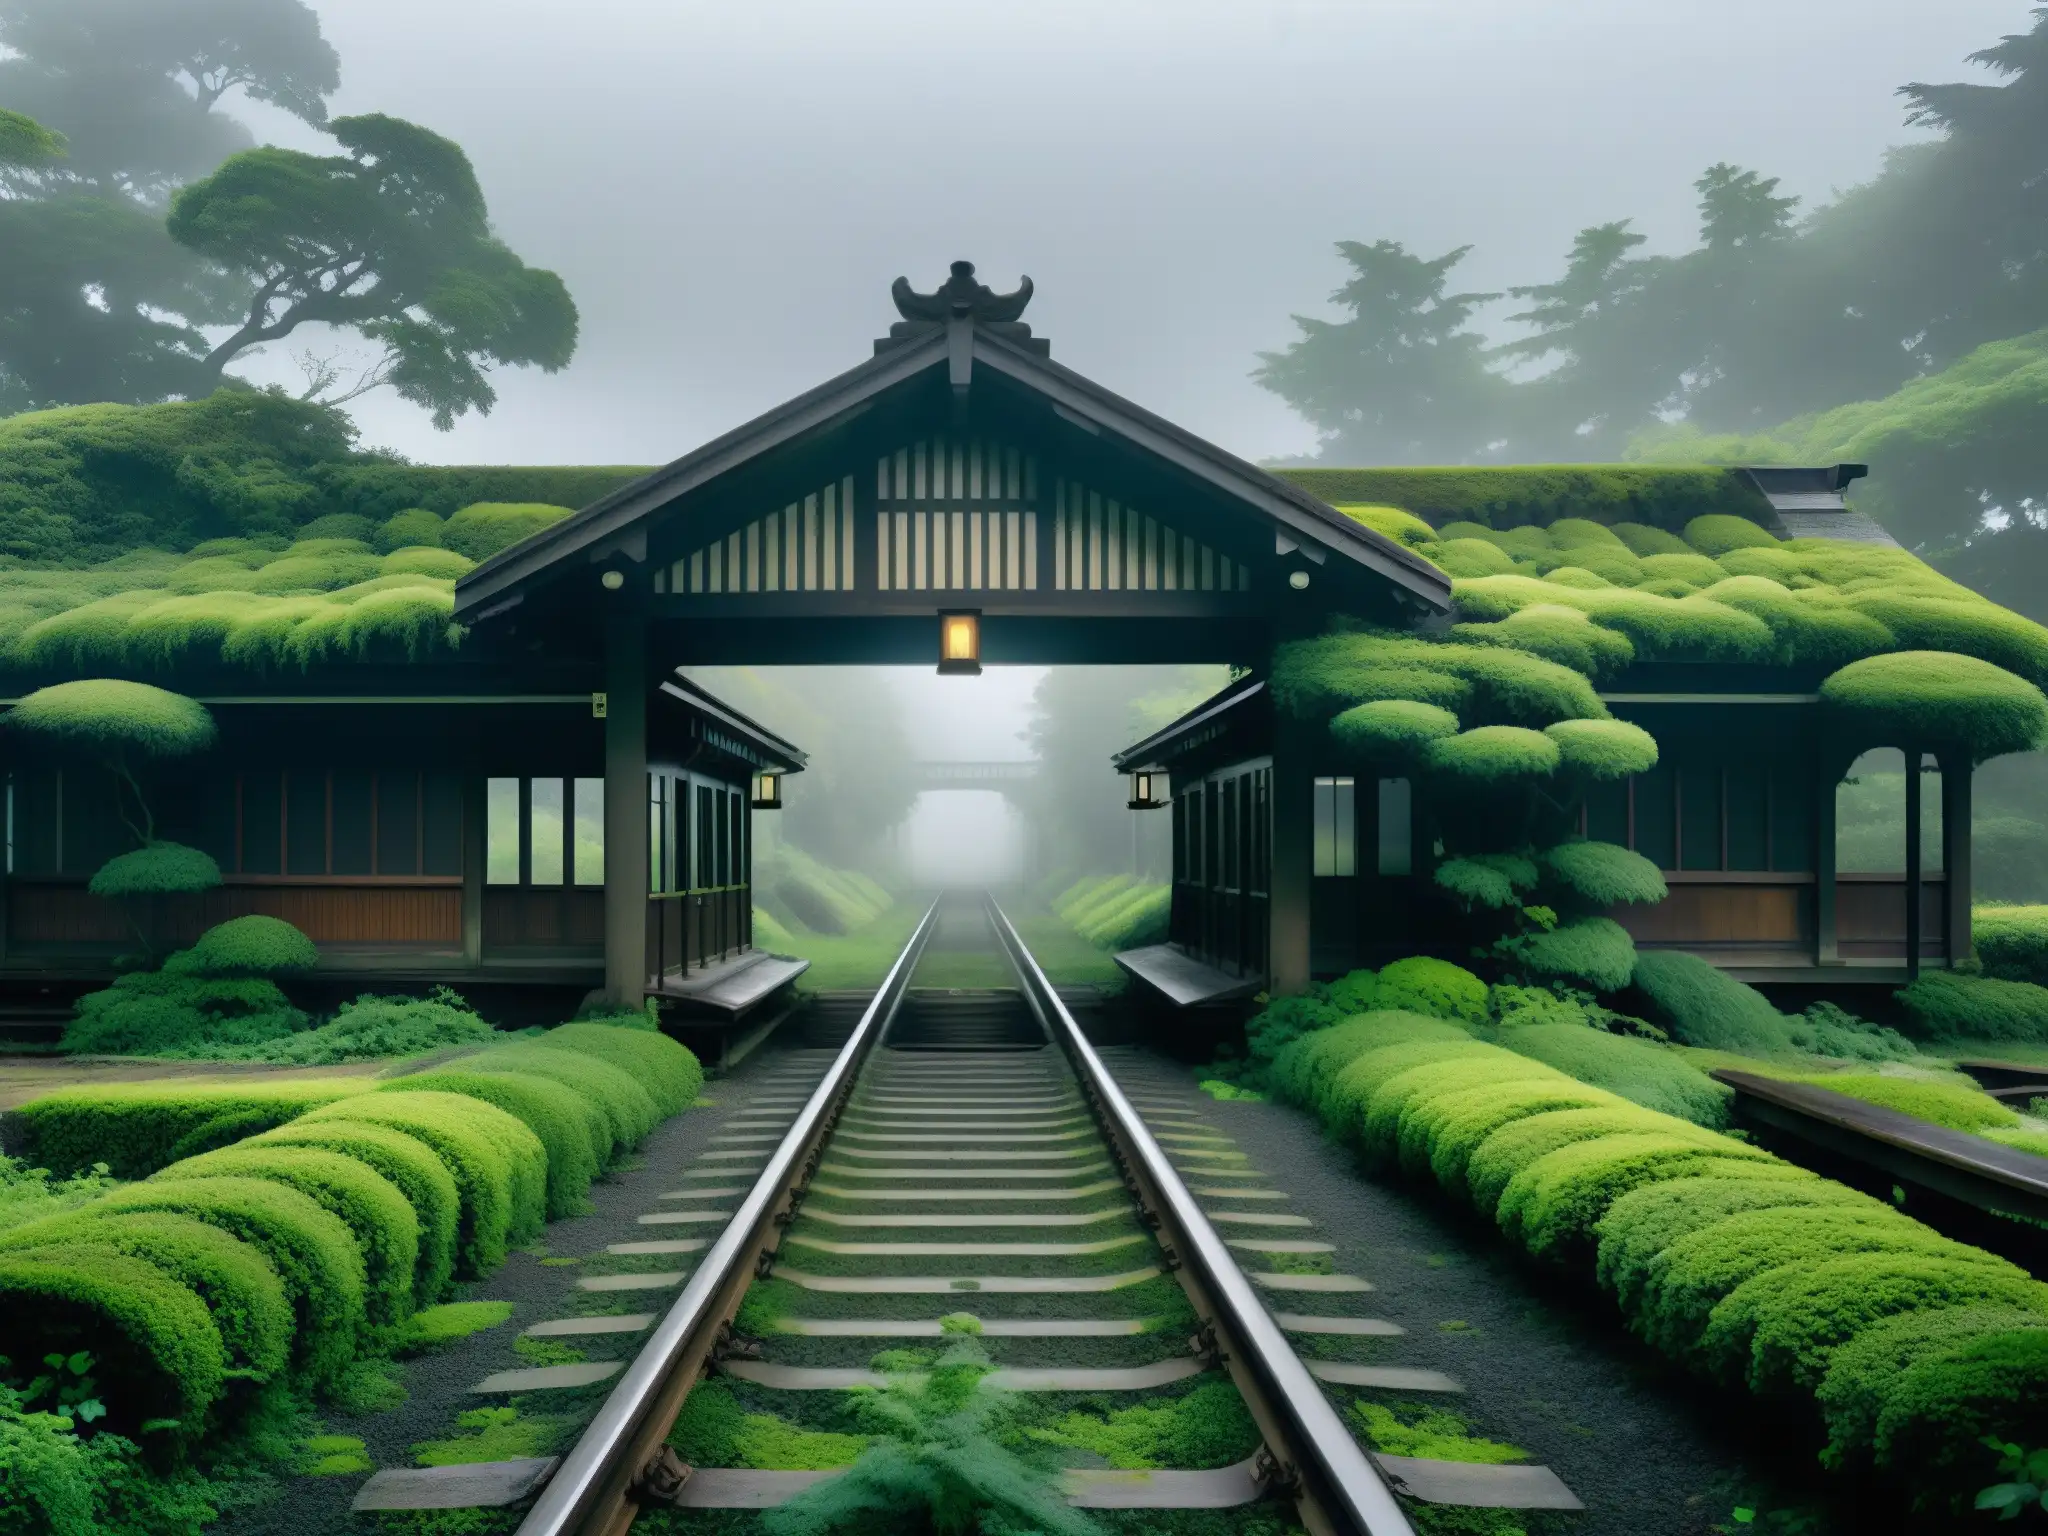 Estación de tren abandonada en Japón, cubierta de musgo y enredaderas, rodeada de neblina, con un tren fantasmal a lo lejos